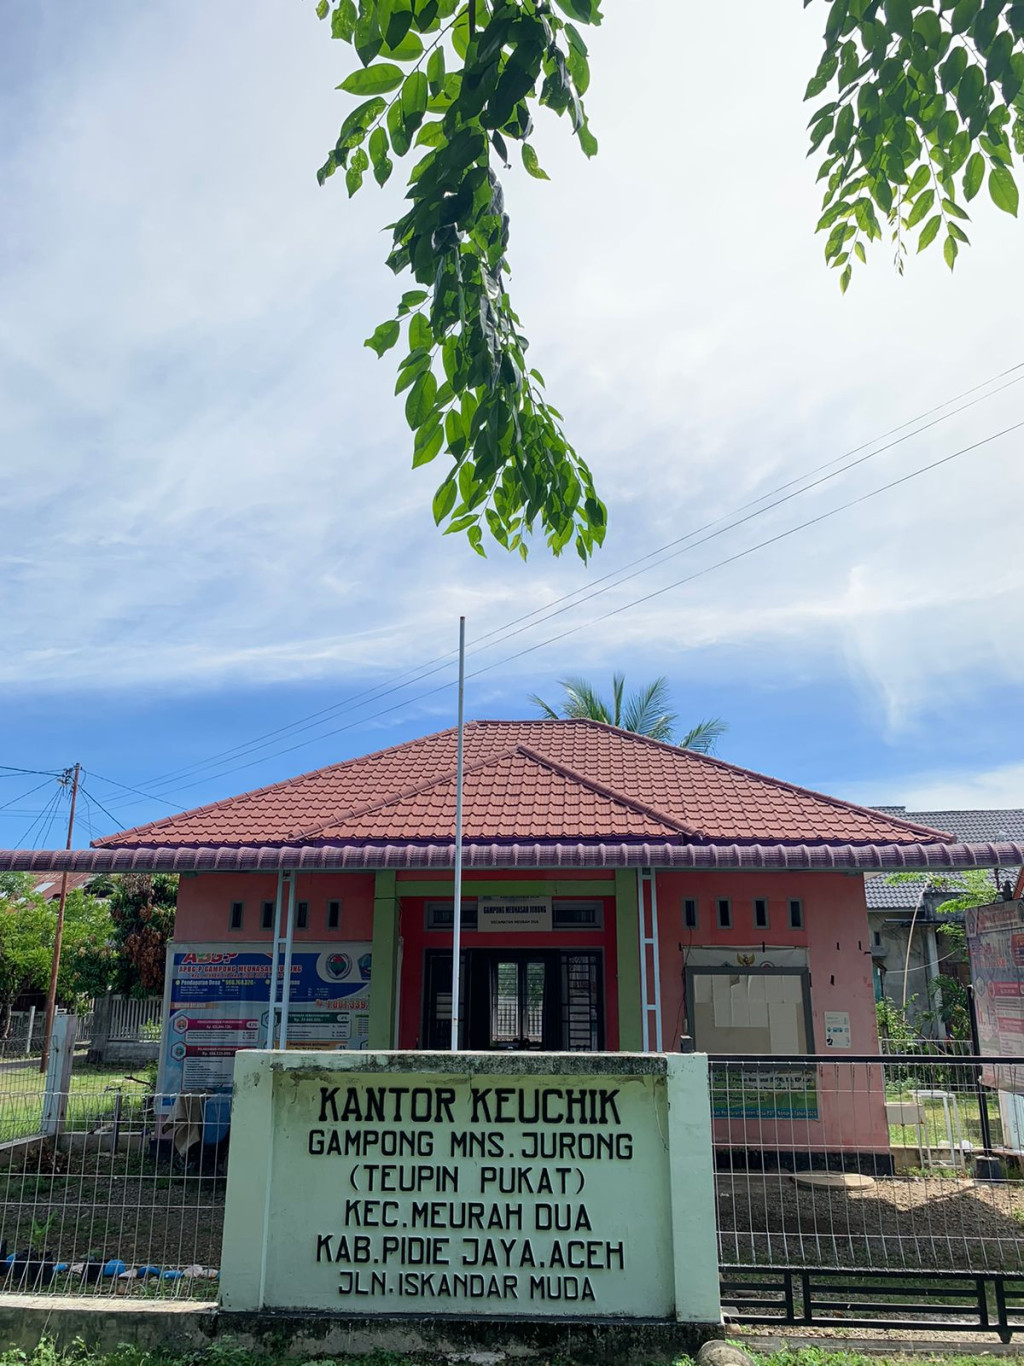 Kantor Keuchik Desa Meunasah Jurong